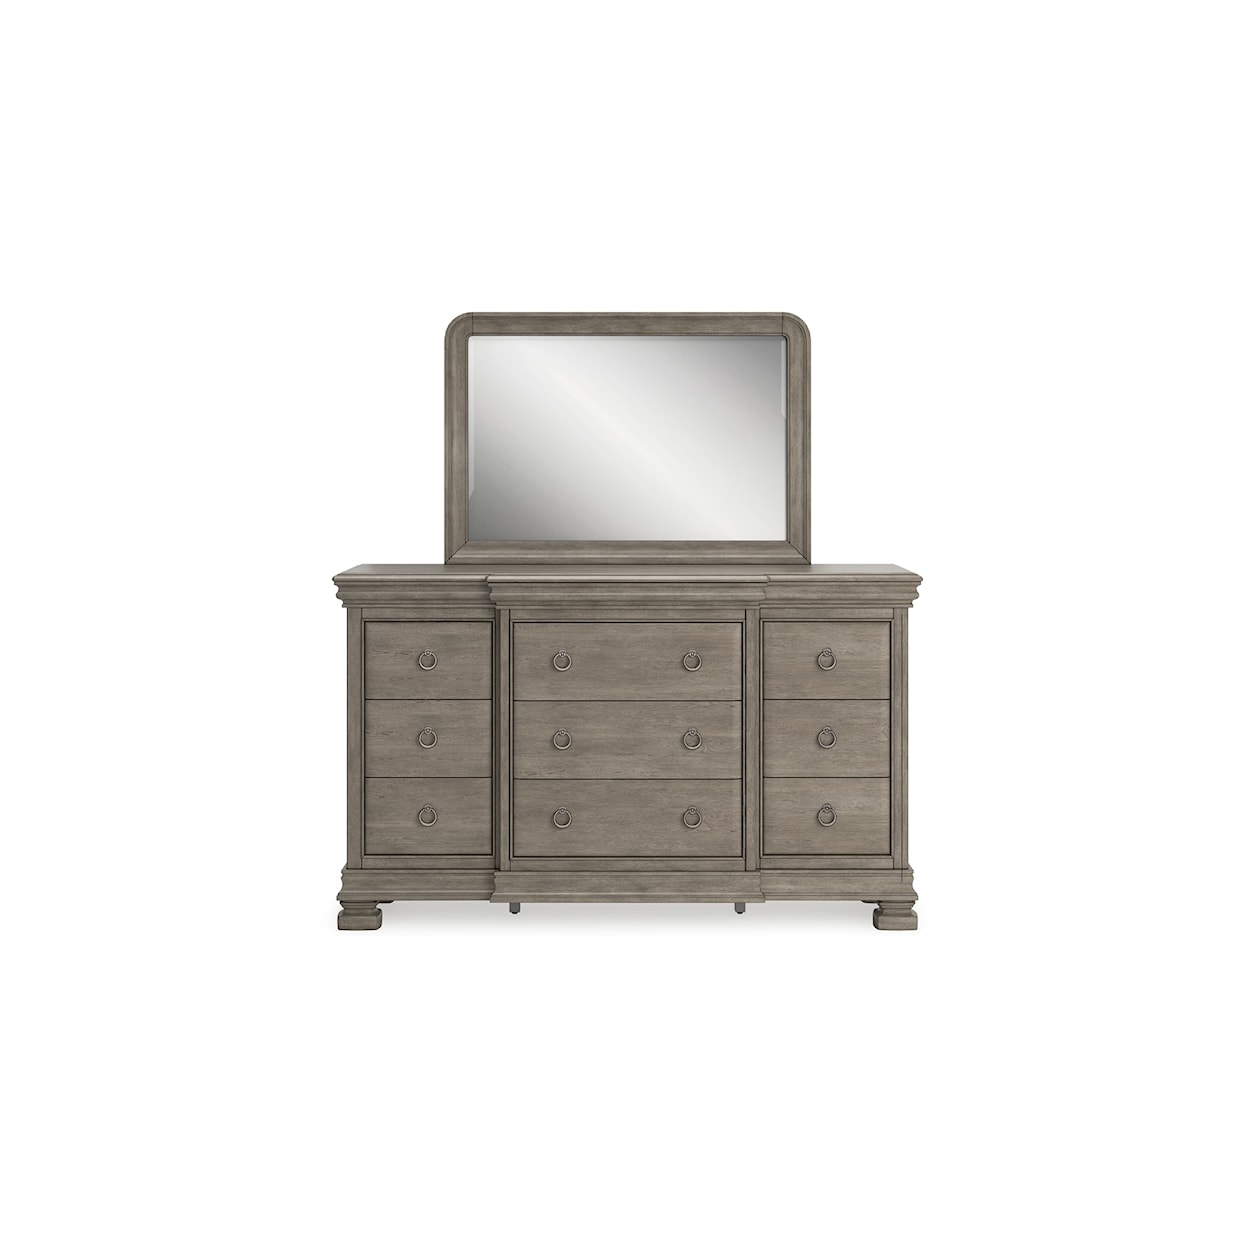 Benchcraft Lexorne Dresser and Mirror